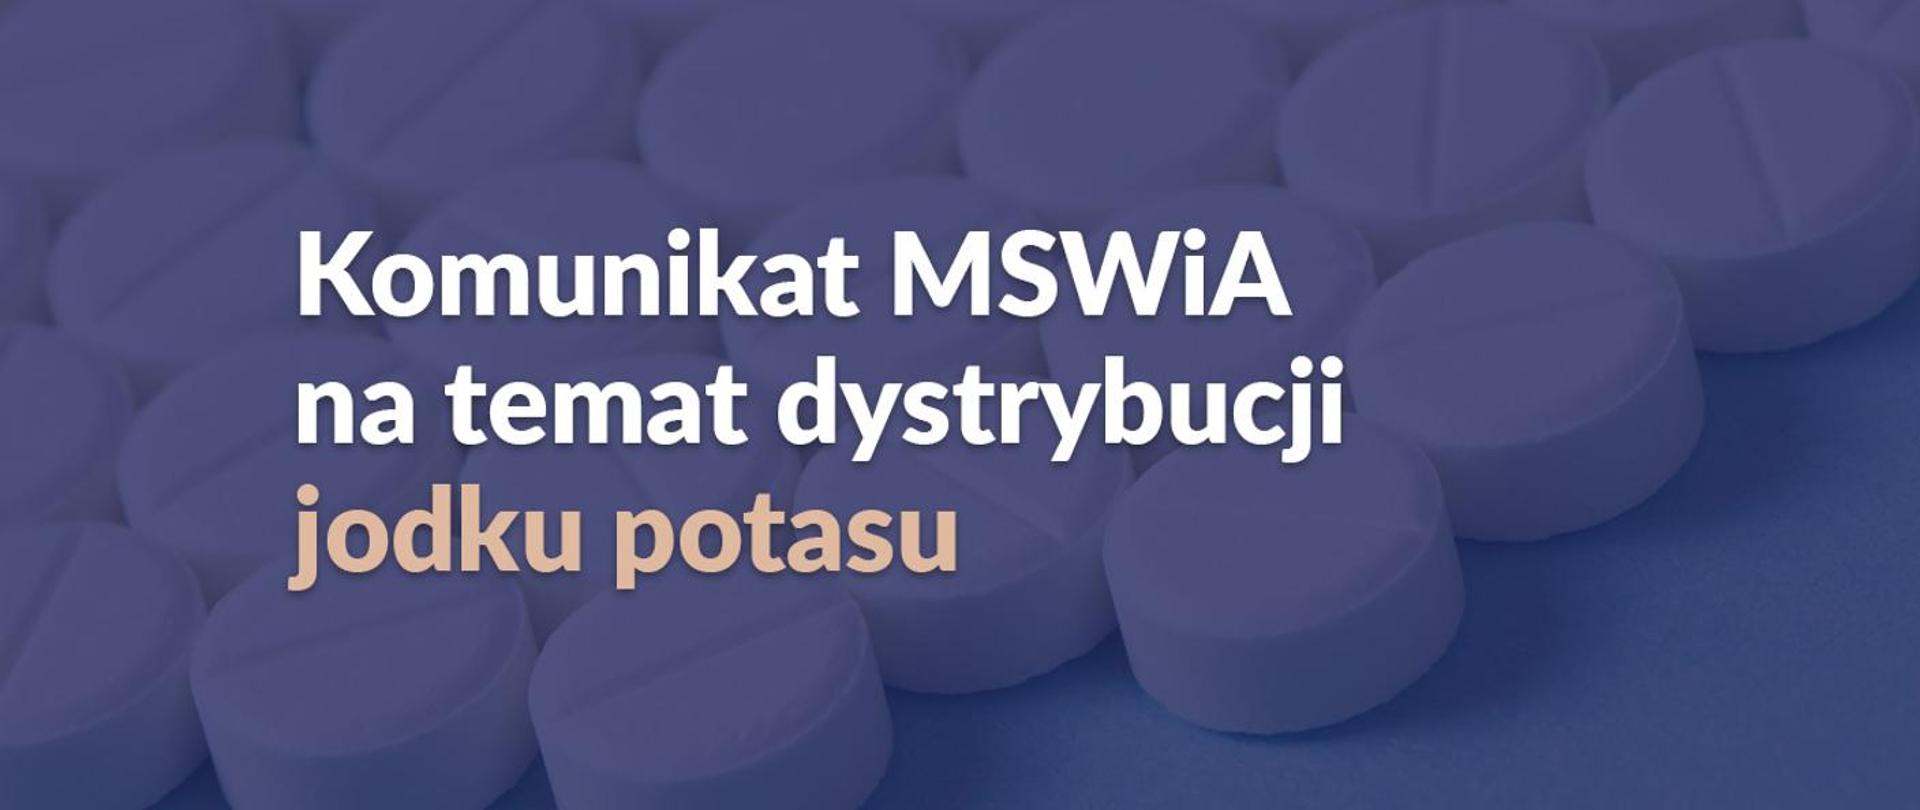 Zdjęcie przedstawia napis: Komunikat MSWiA na temat dystrybucji jodku potasu